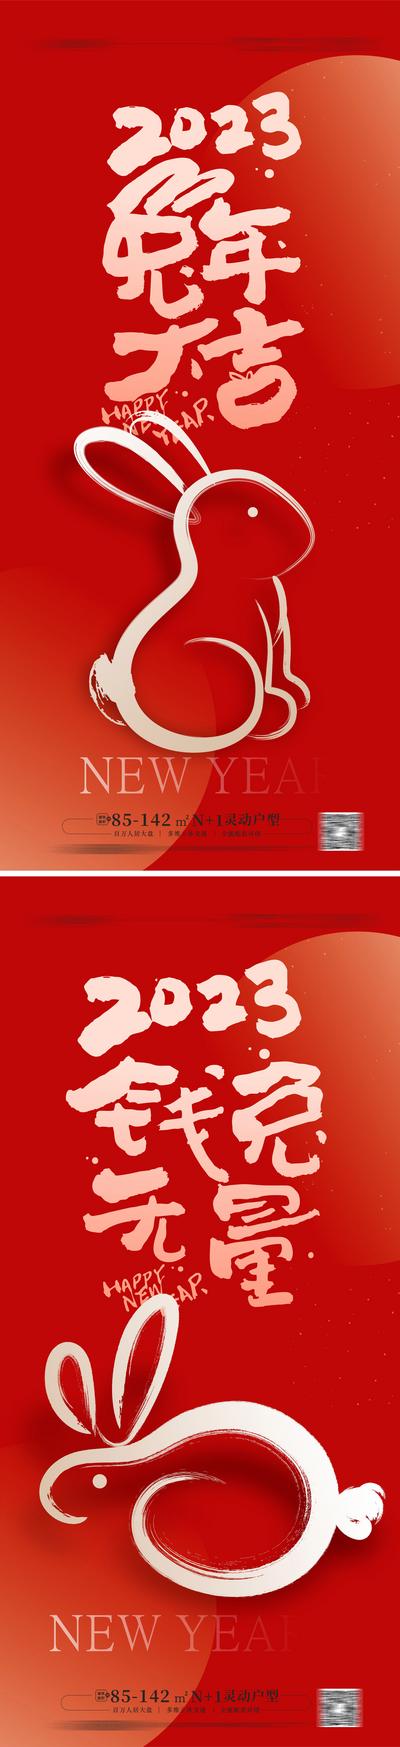 南门网 海报 中国传统节日 免年 春节 新年 兔子 简约